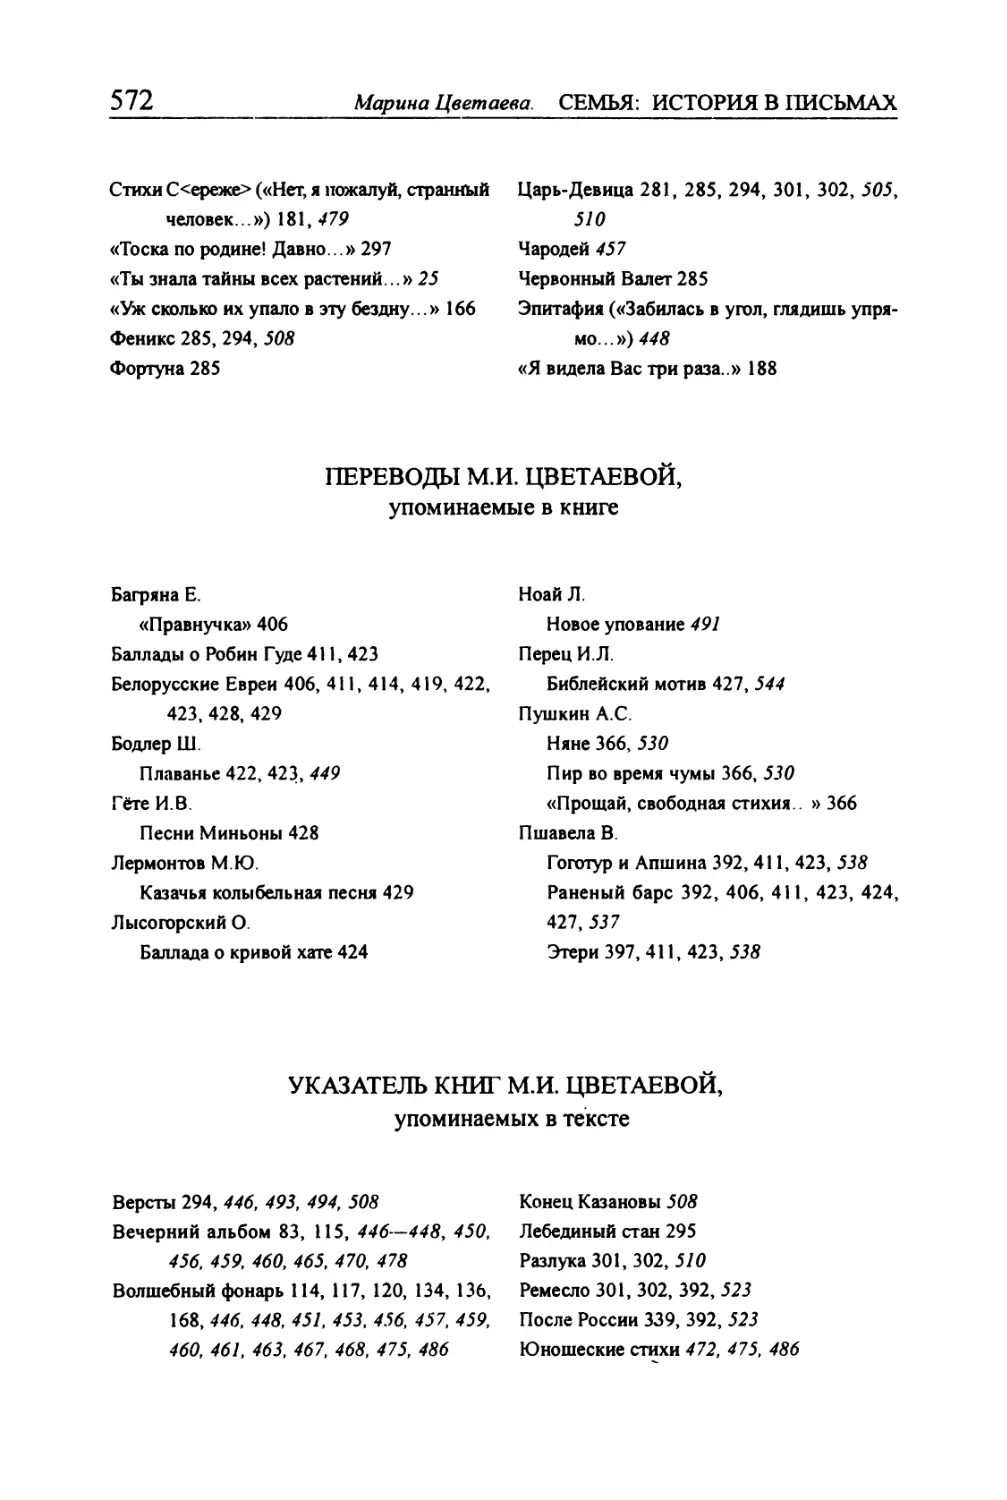 Переводы М.И. Цветаевой, упоминаемые в книге
Указатель книг М.И. Цветаевой, упоминаемых в тексте